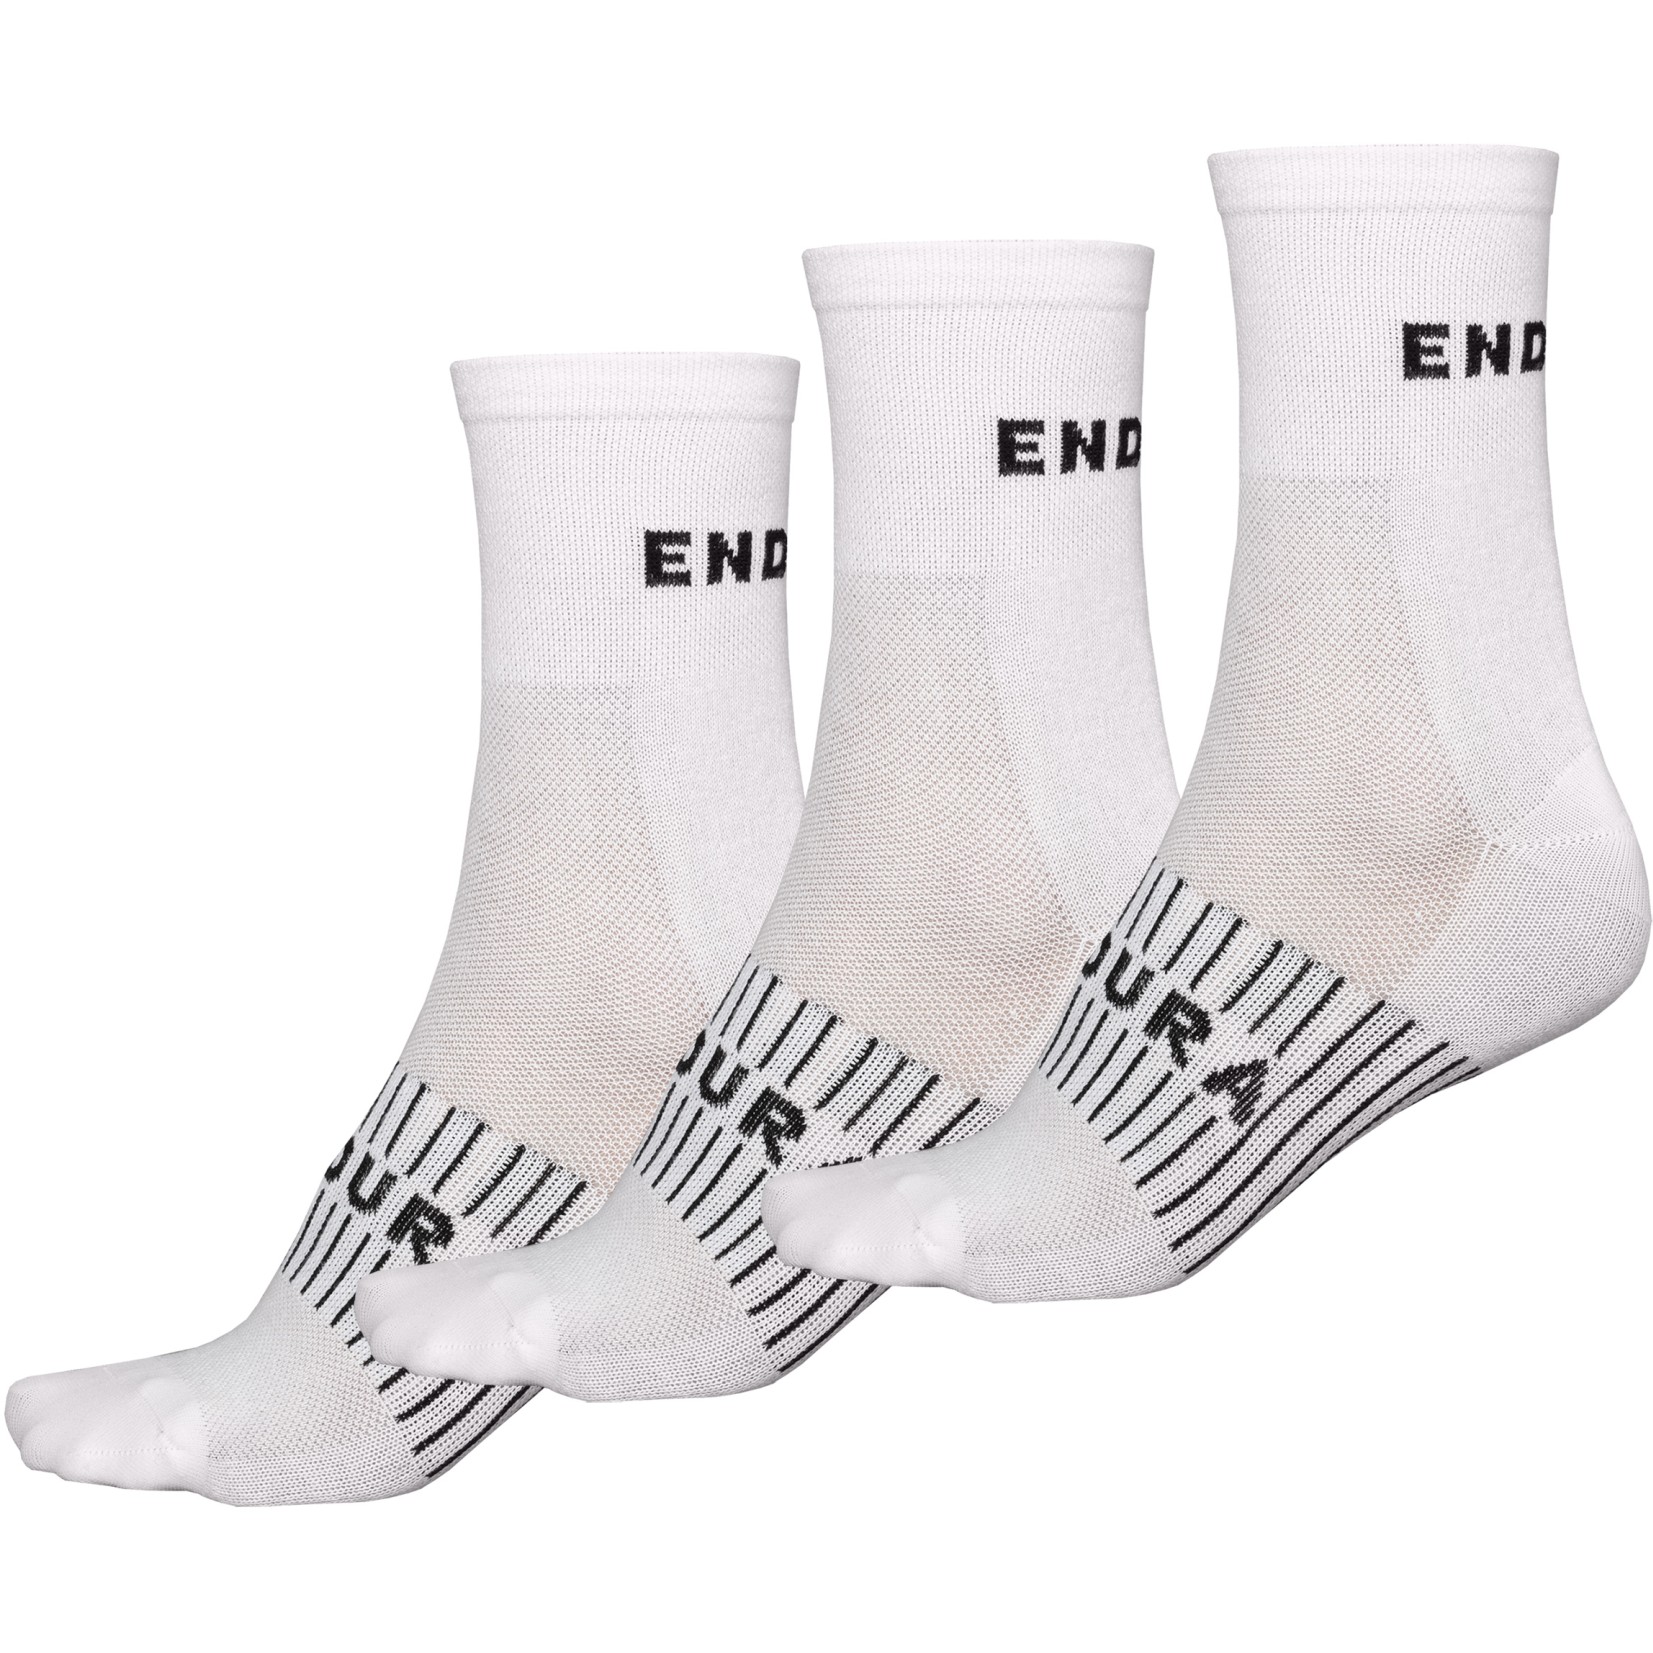 Produktbild von Endura Coolmax® Race Socken (Dreierpack) - weiß